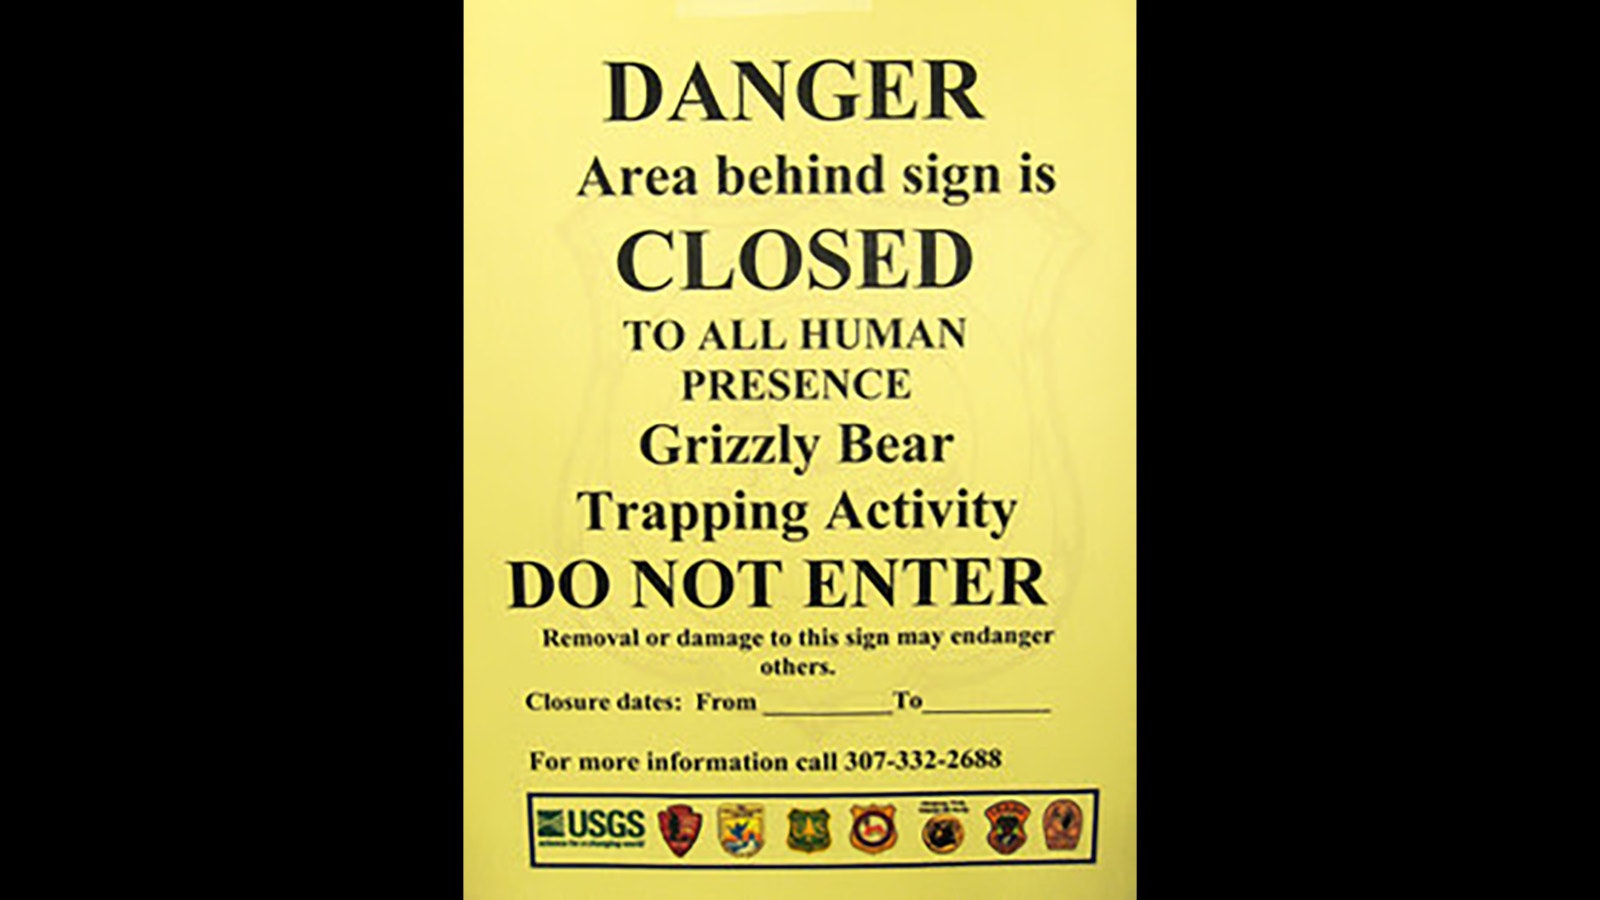 Griz warning sign 5 12 23